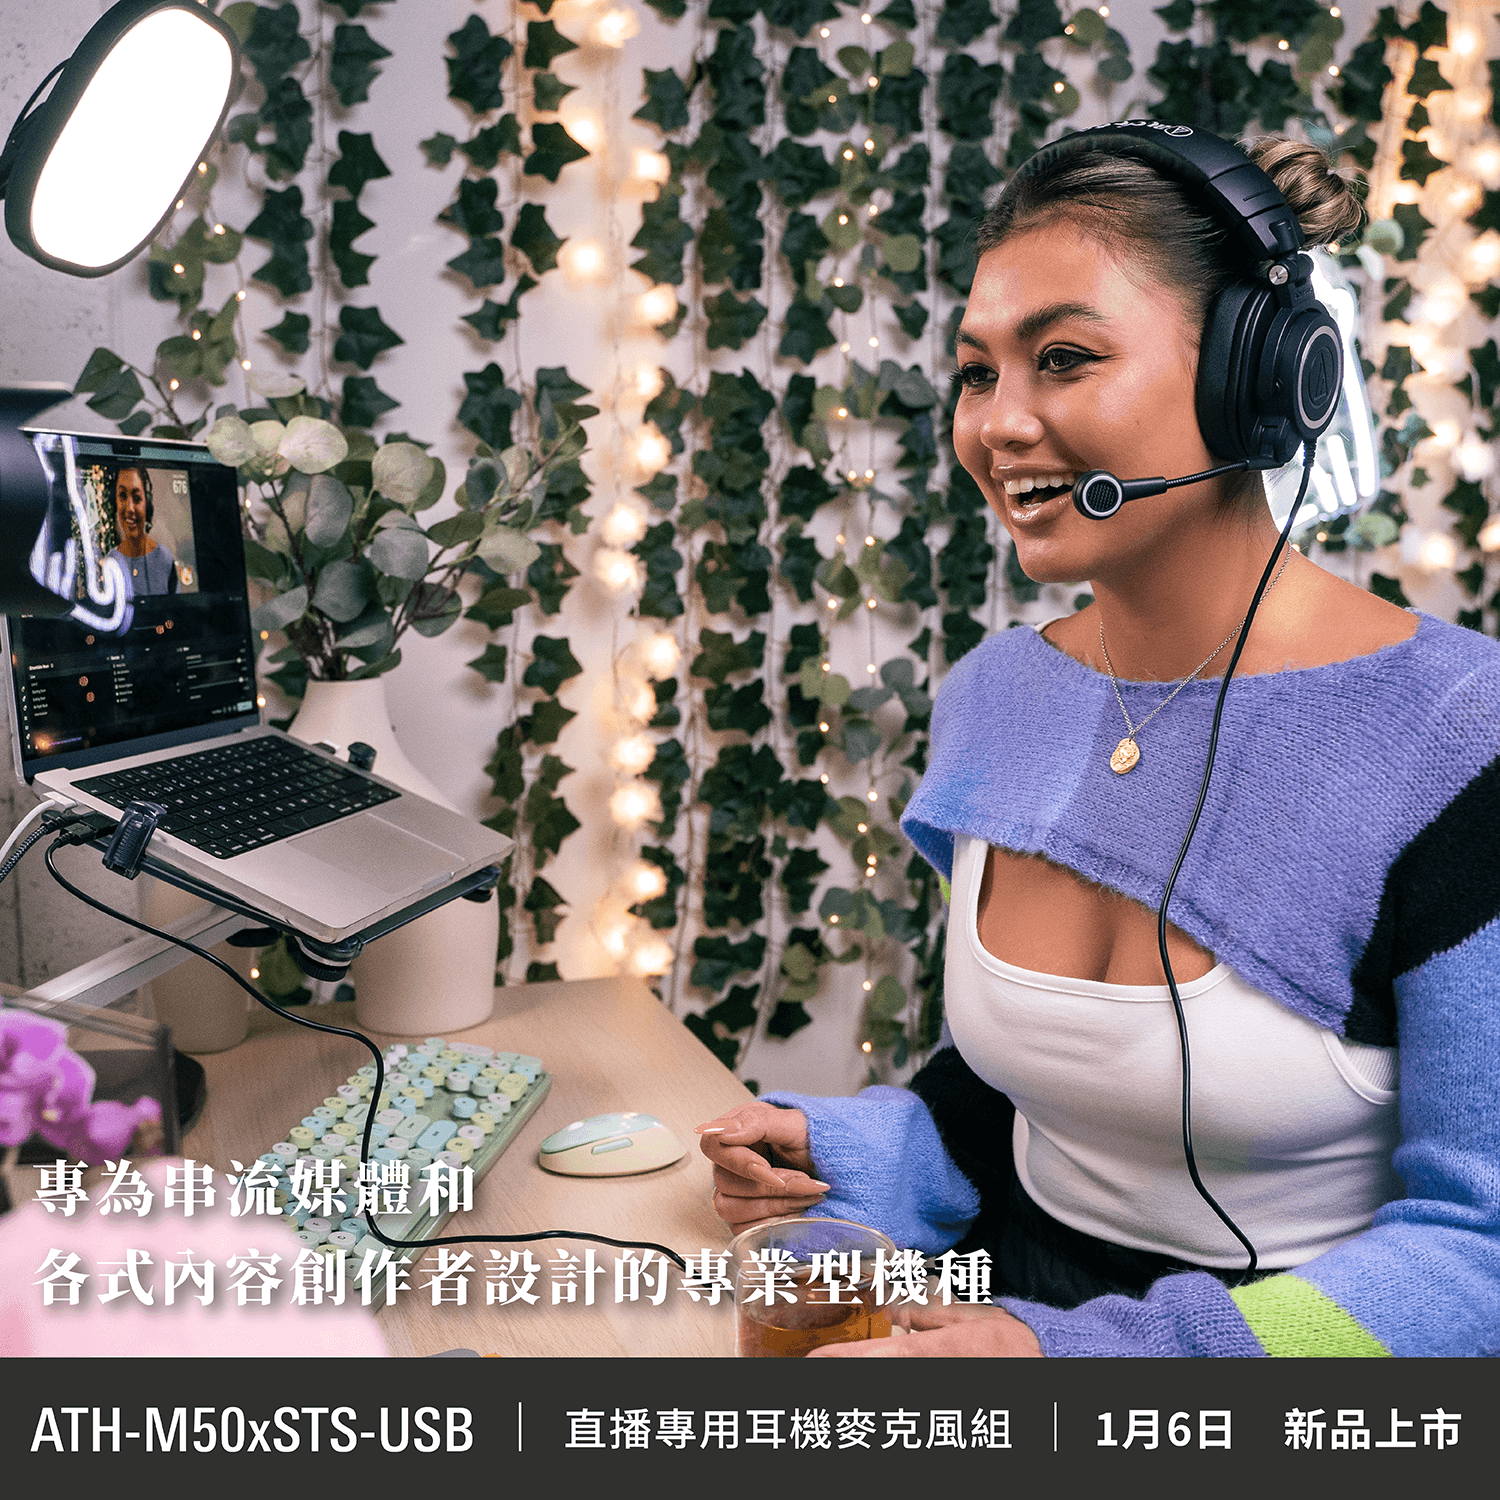 ATH-M50xSTS-USB 直播專用耳機麥克風組｜新品上市- 台灣鐵三角Audio